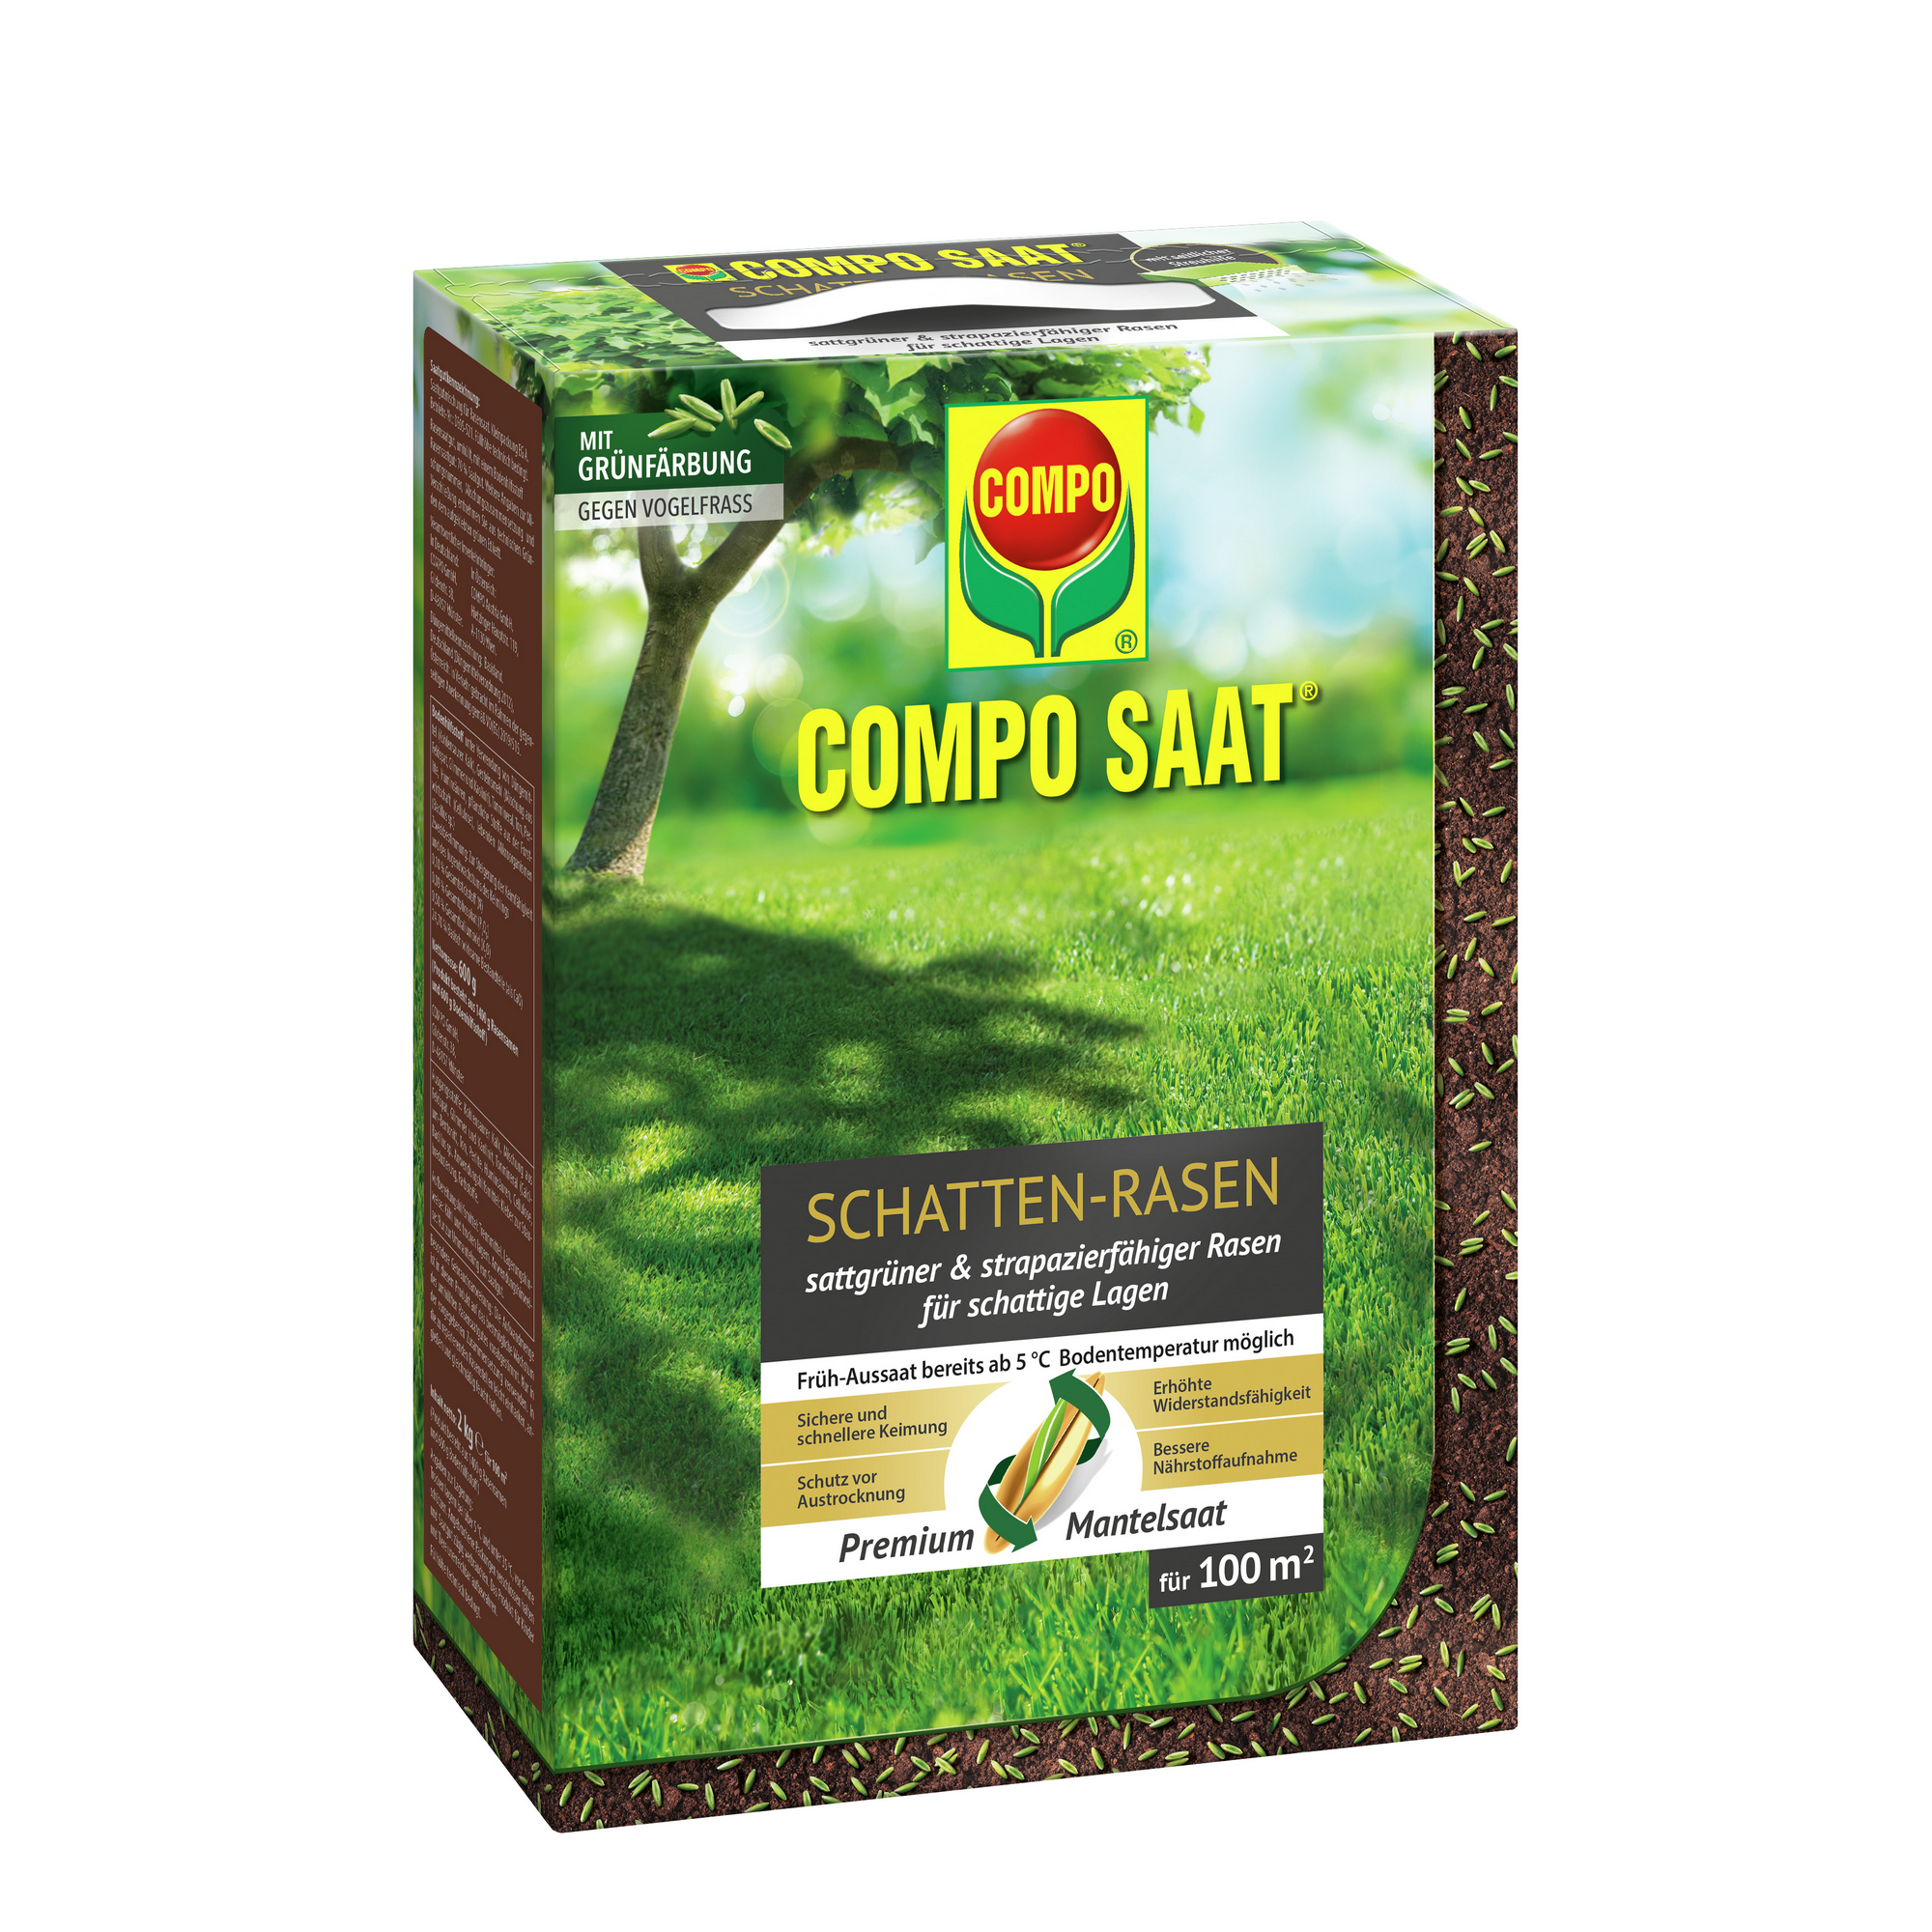 Schatten-Rasen 'Compo Saat' 2 kg für 100 m² + product picture